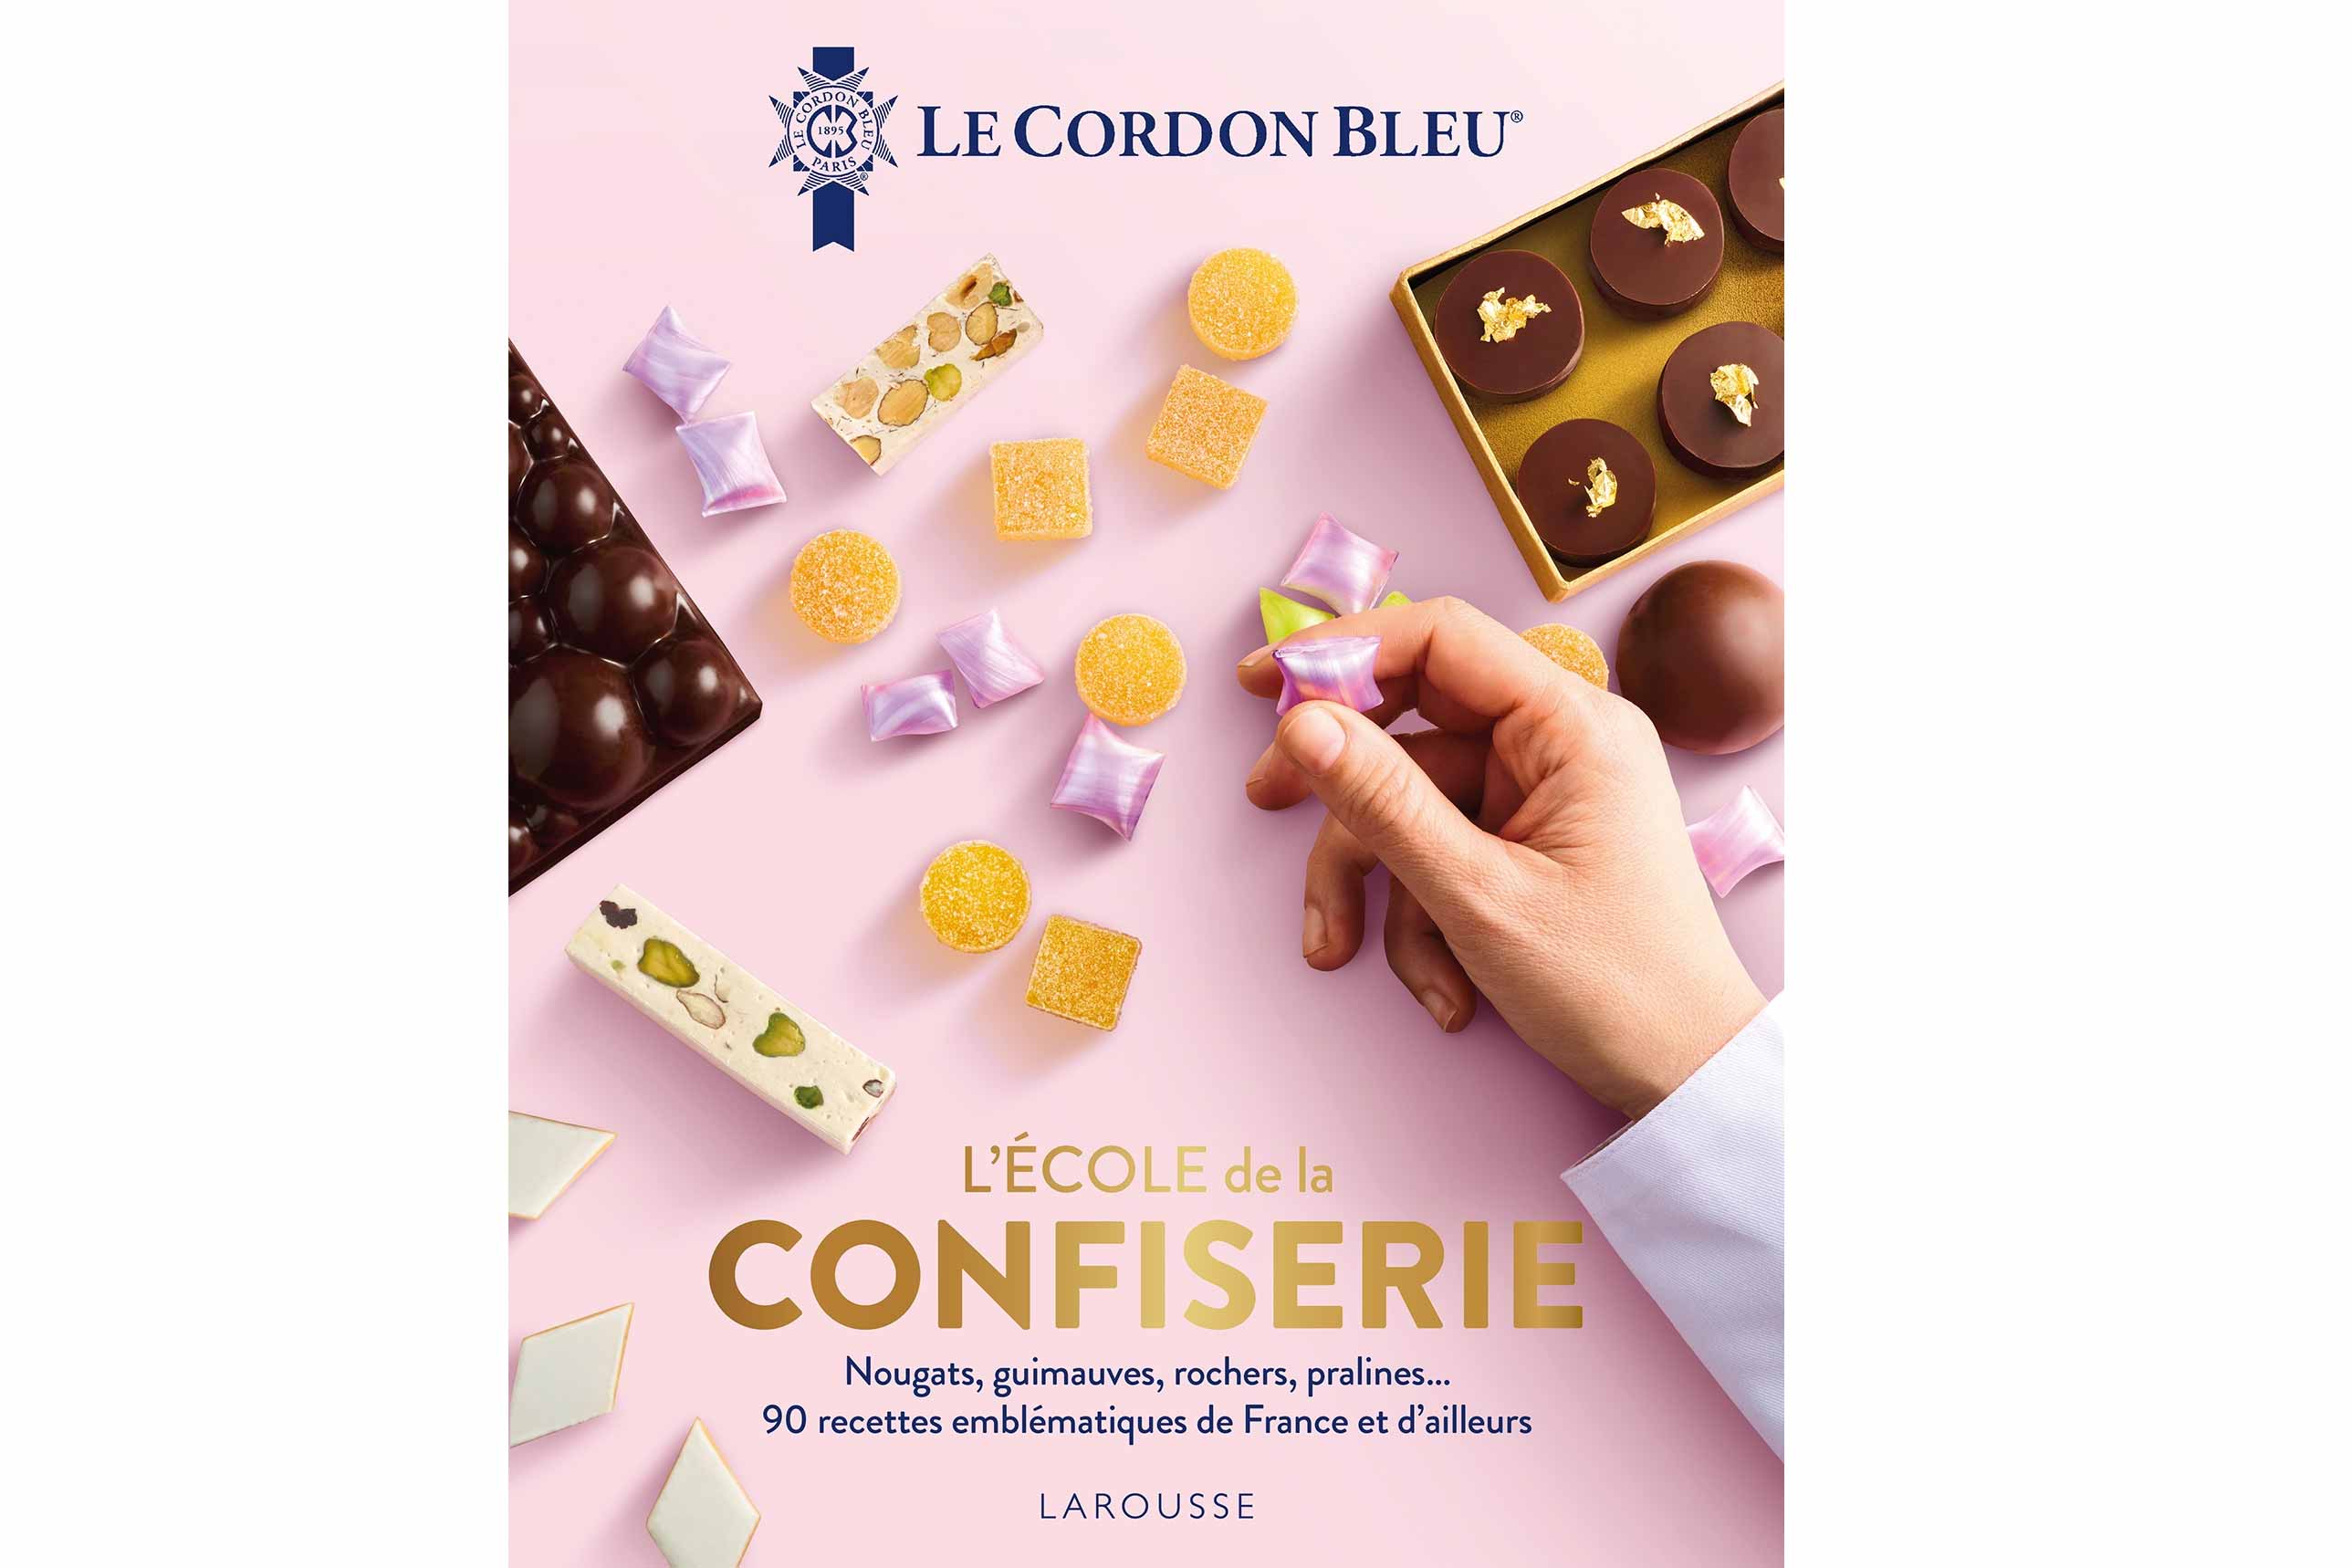 Le Cordon Bleu unveils its latest book: L'École de la Confiserie